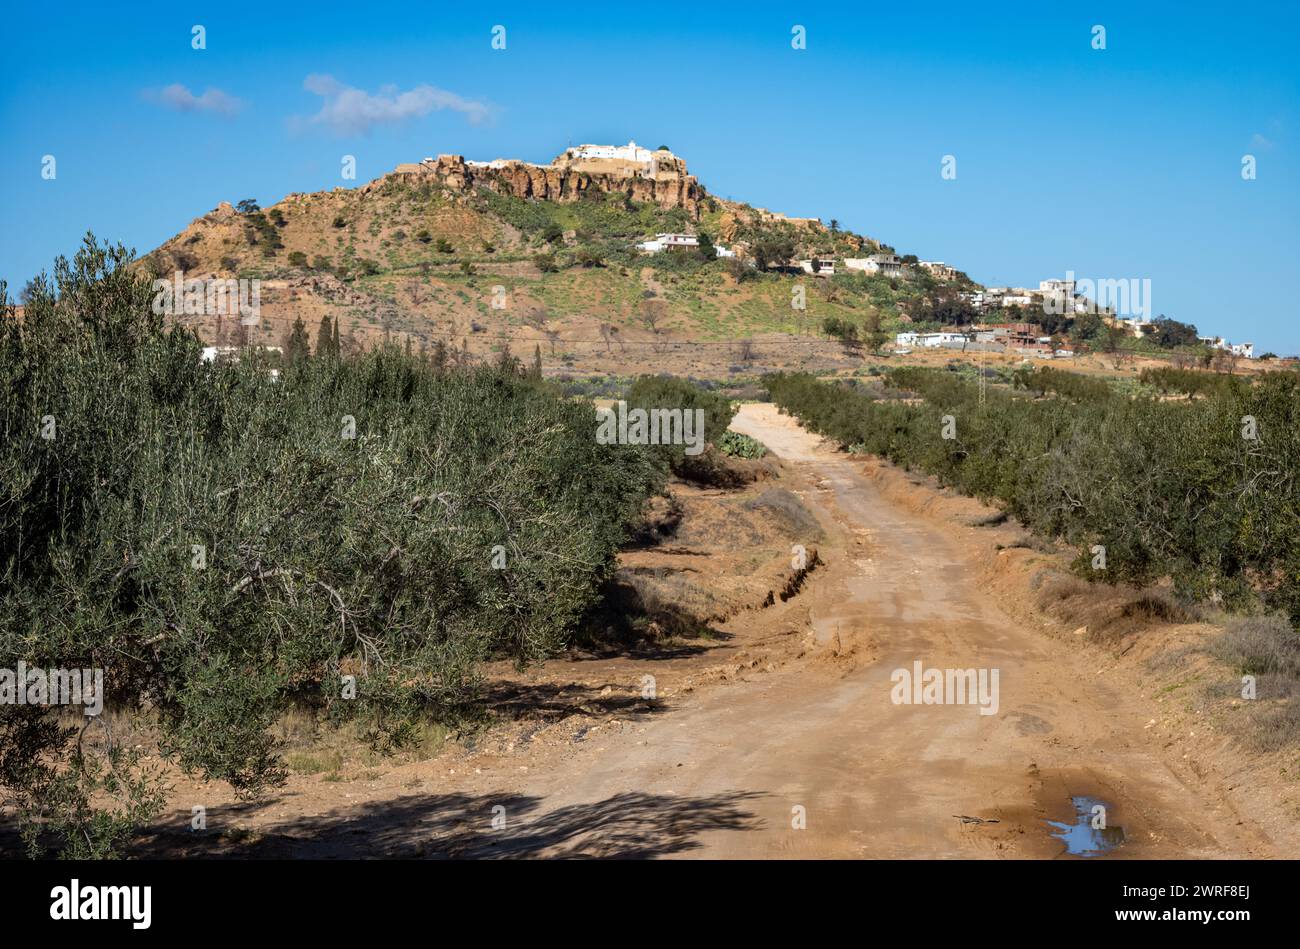 L'antico villaggio berbero in cima alla collina di Takrouna visto in lontananza oltre gli oliveti. Foto Stock